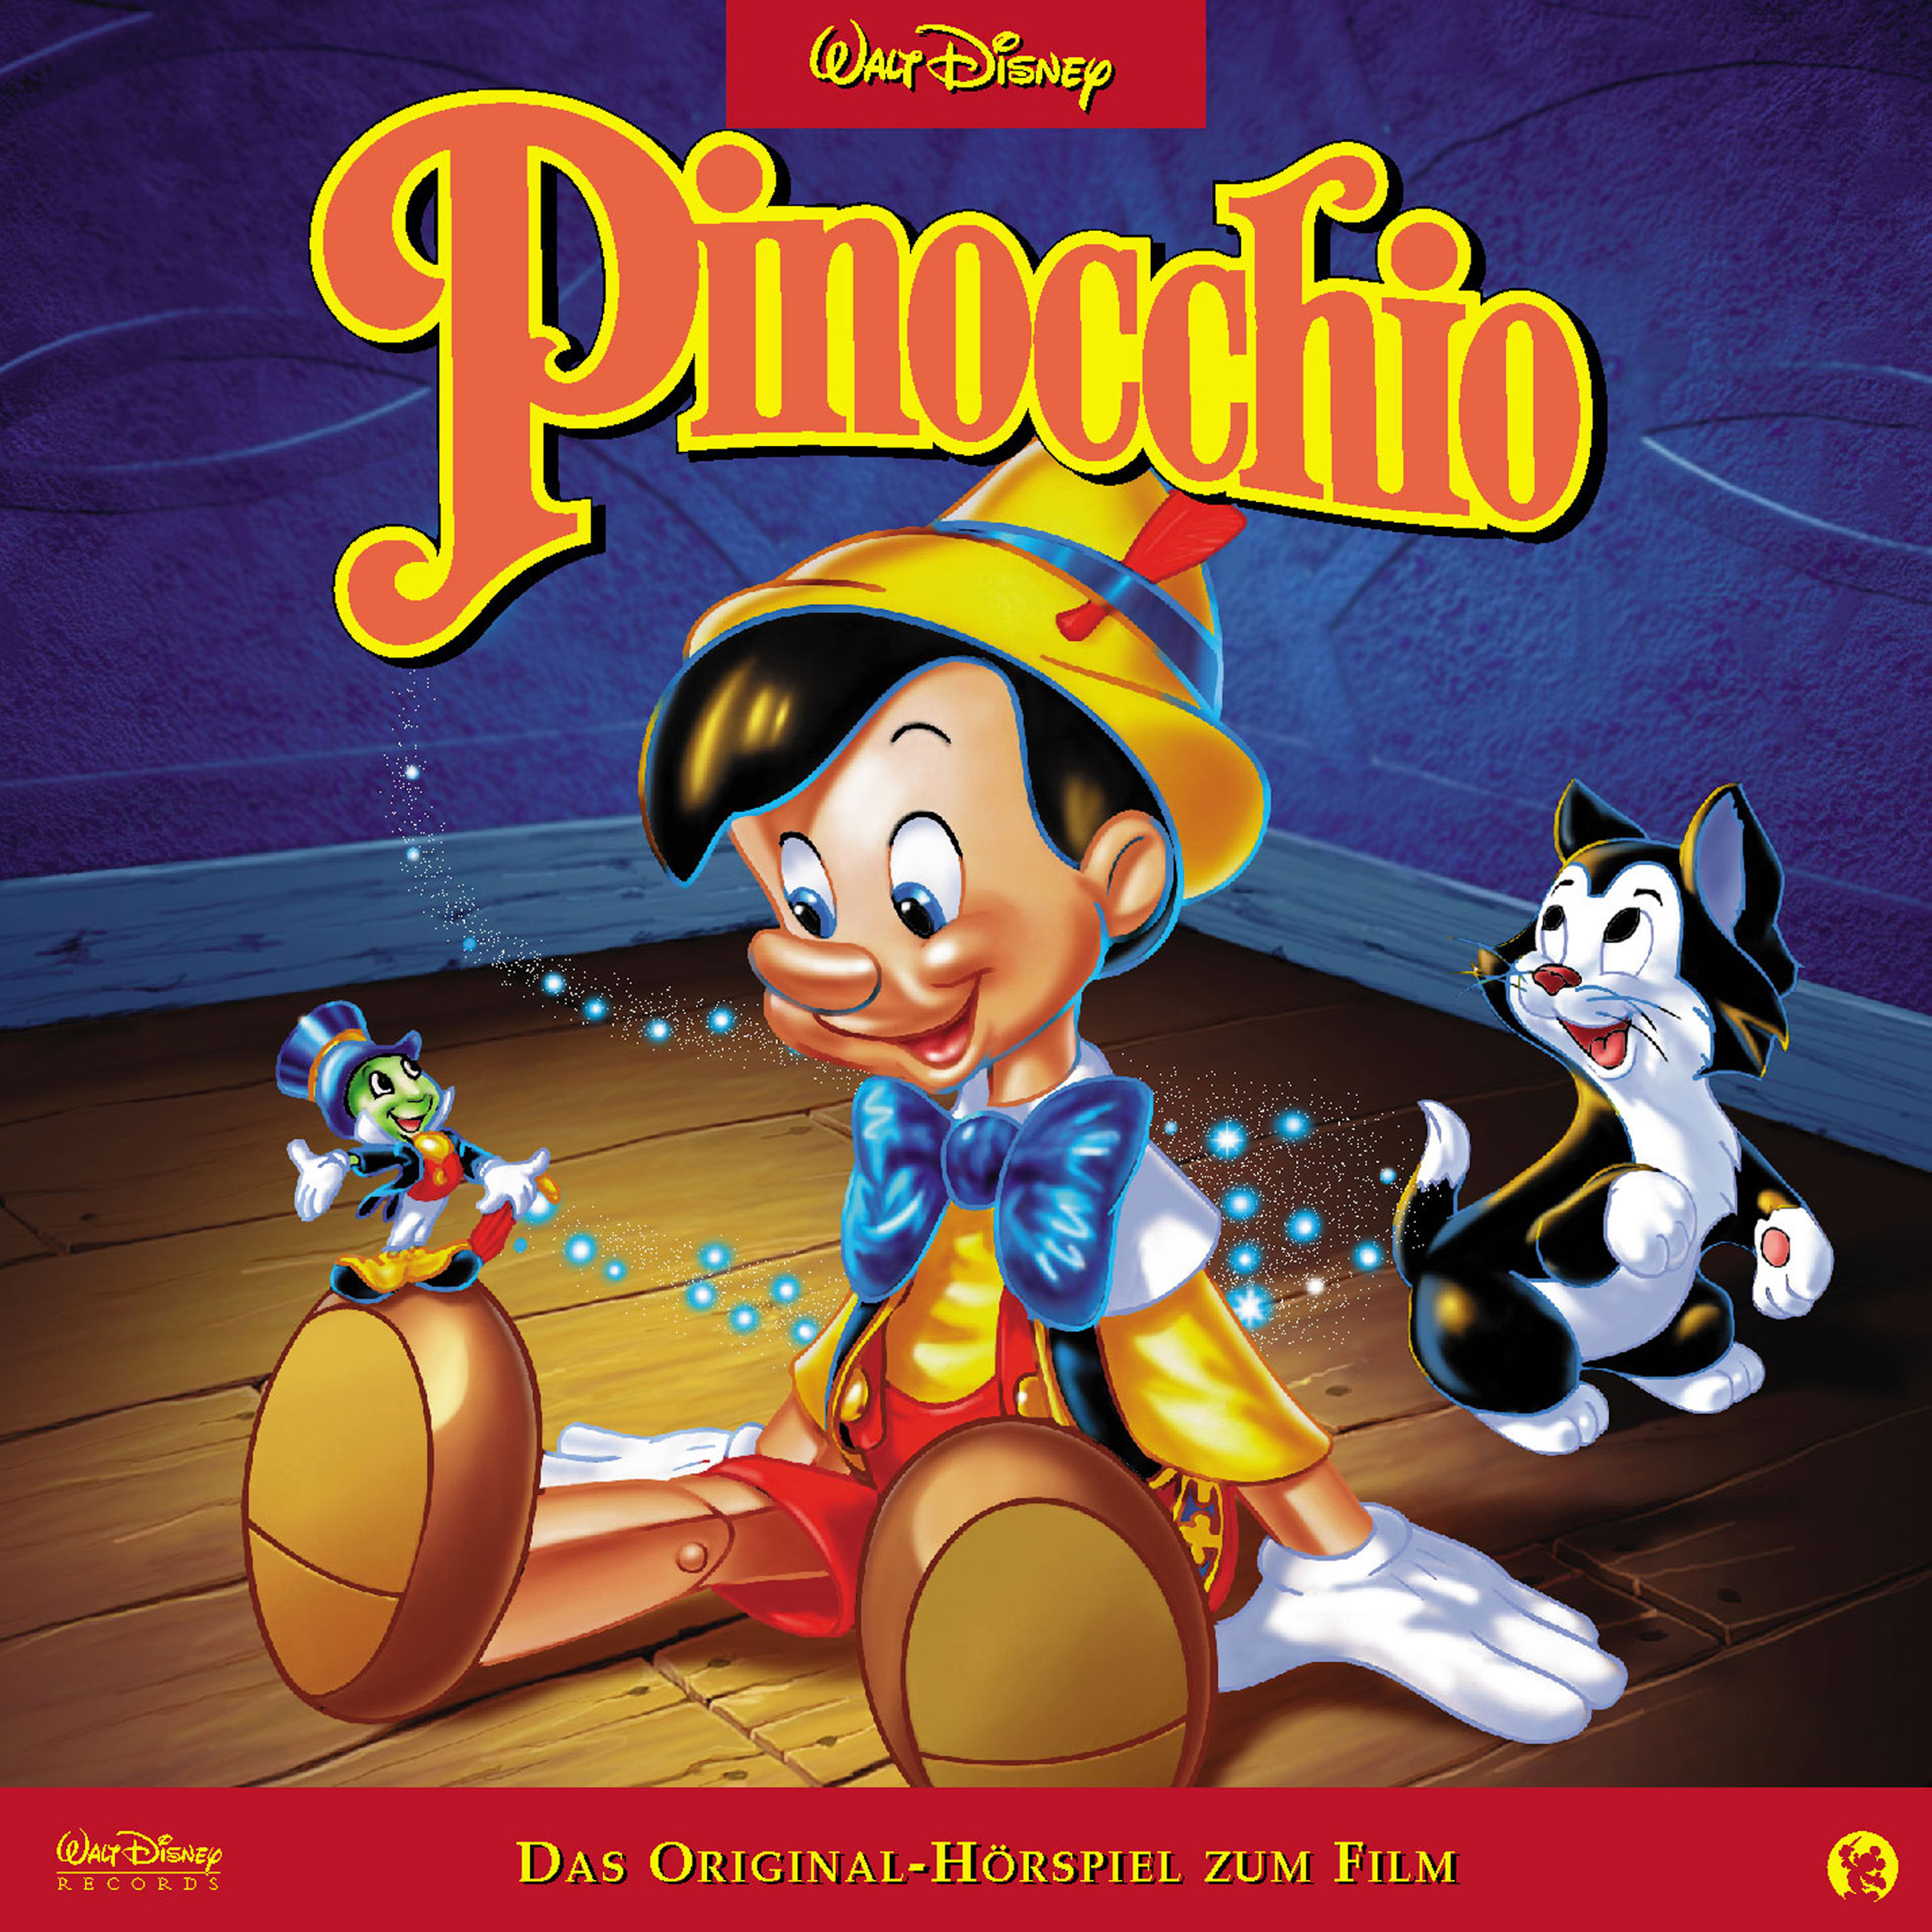 Disney - Pinocchio Hörbuch sicher downloaden bei Weltbild.de